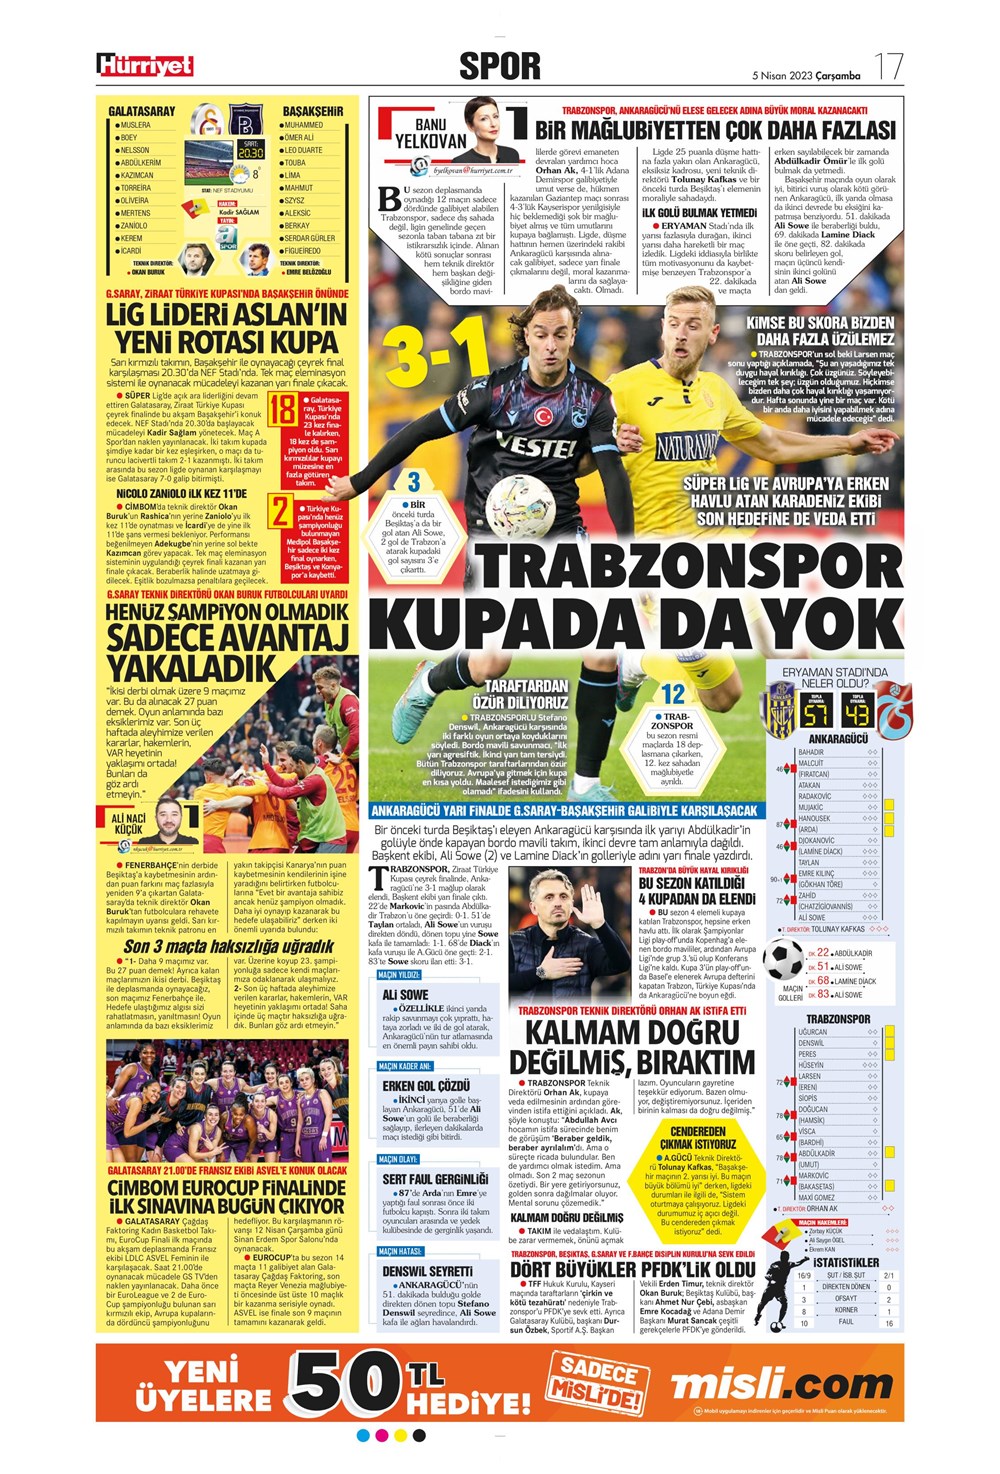 "Dünyada kimse buna penaltı demez" - Sporun manşetleri (5 Nisan 2023)  - 21. Foto